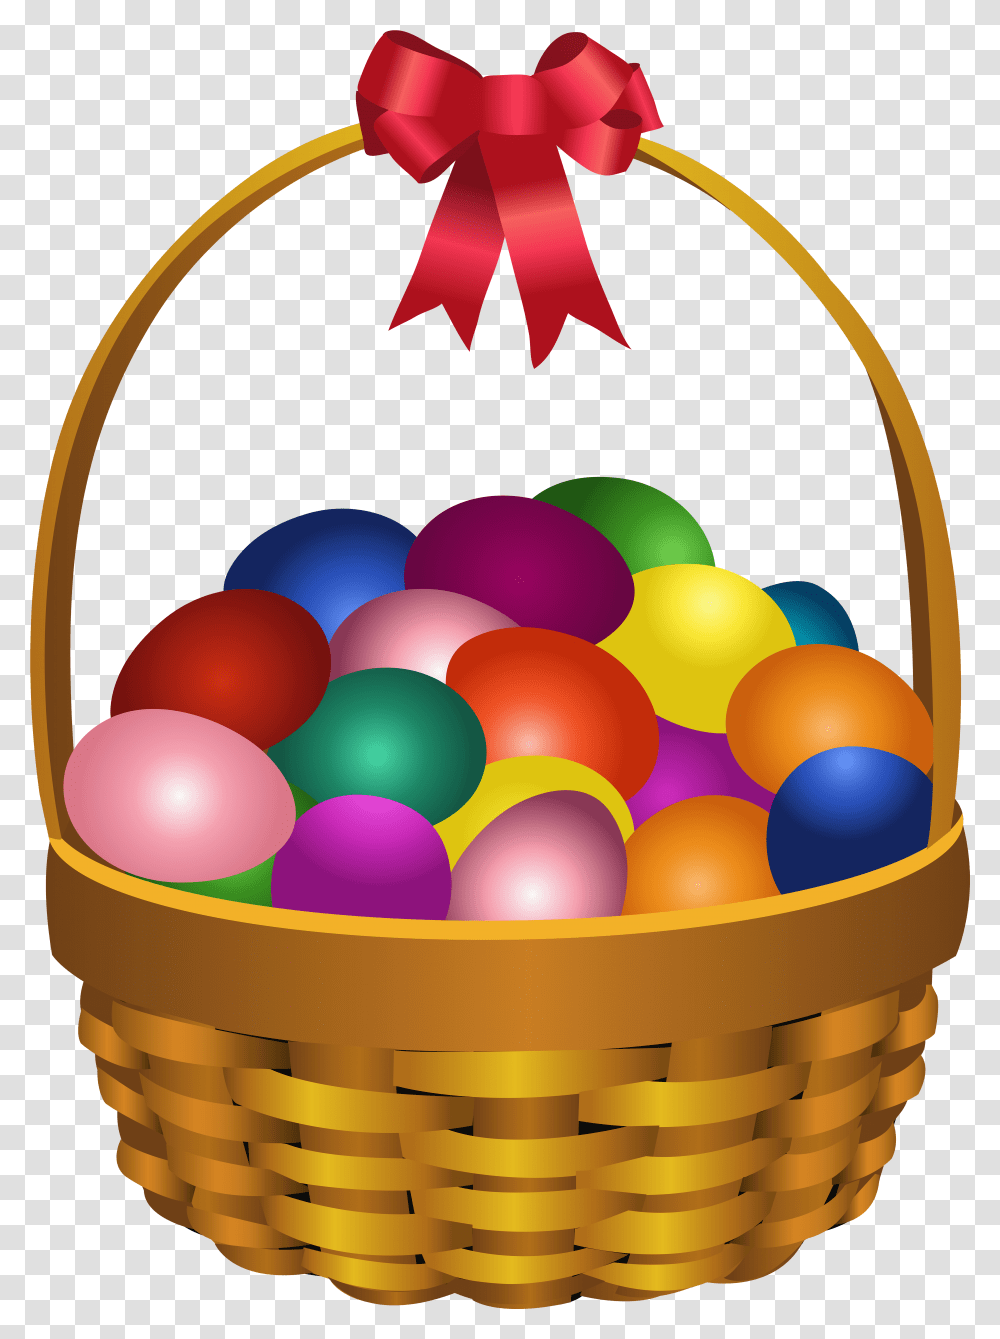 Easter Bunny Red Easter Egg Basket Clip Art Fruit Basket Clip Art, Food, Balloon, Plant Transparent Png